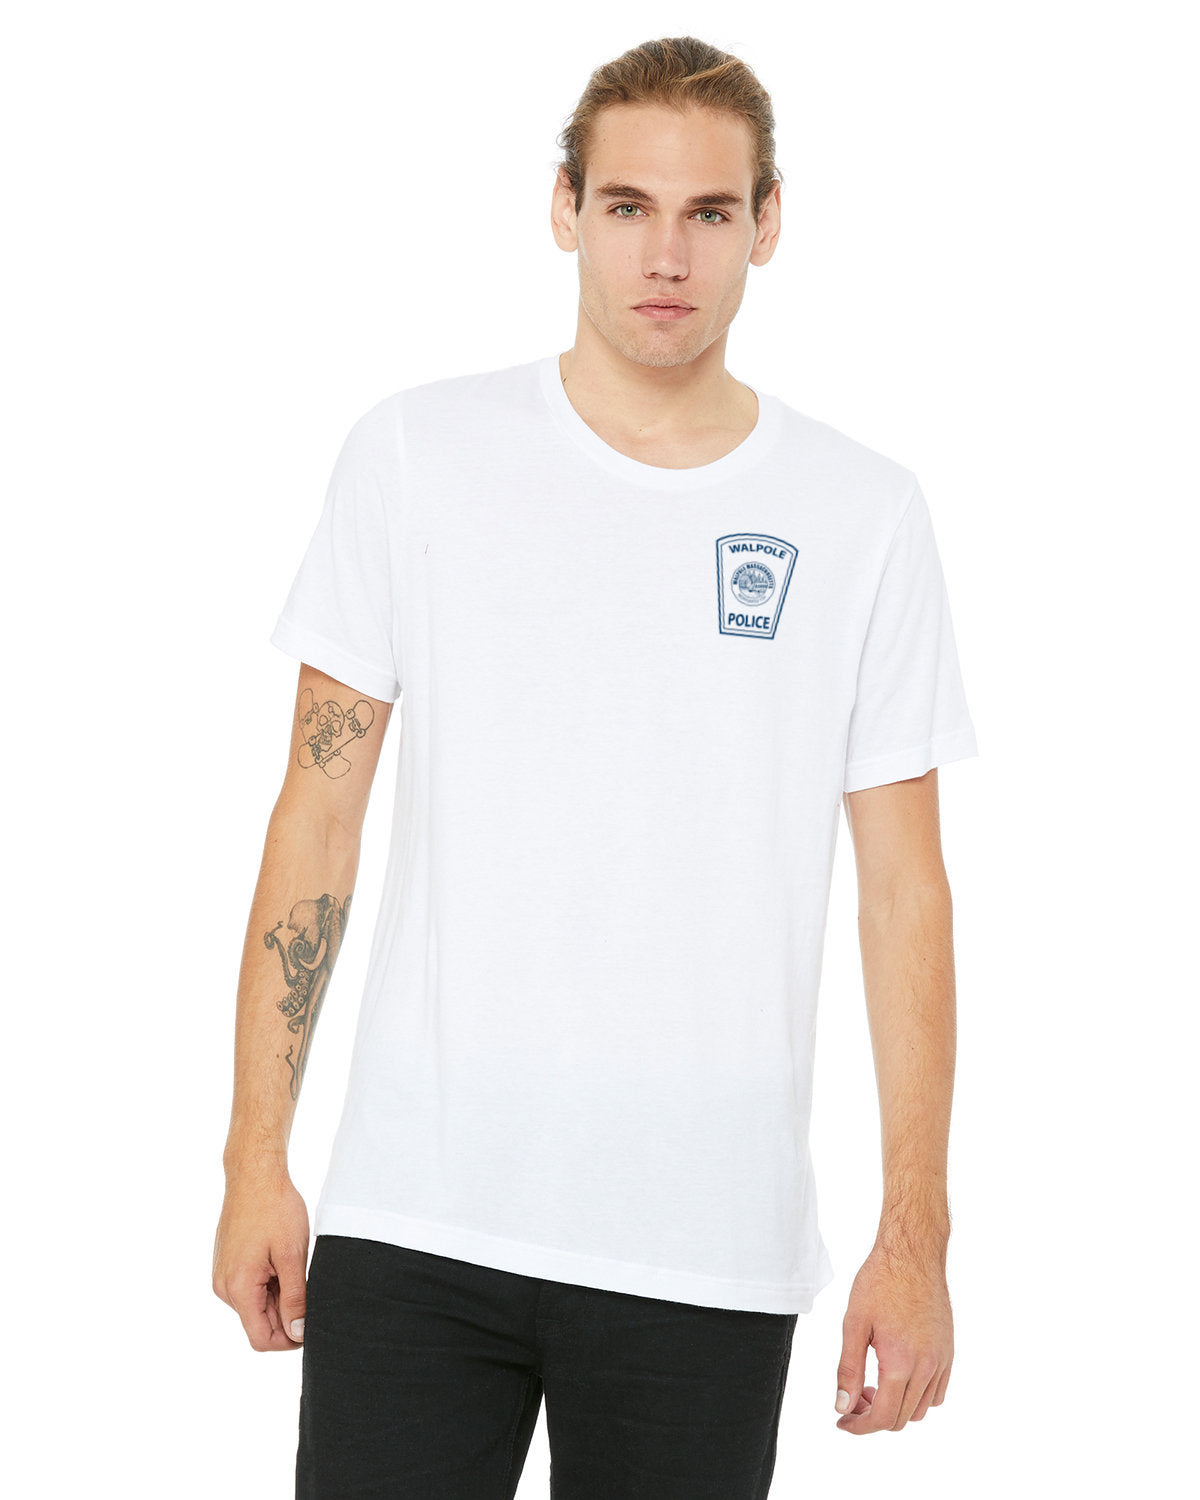 WPD 115 Unisex T-Shirt (3001C)